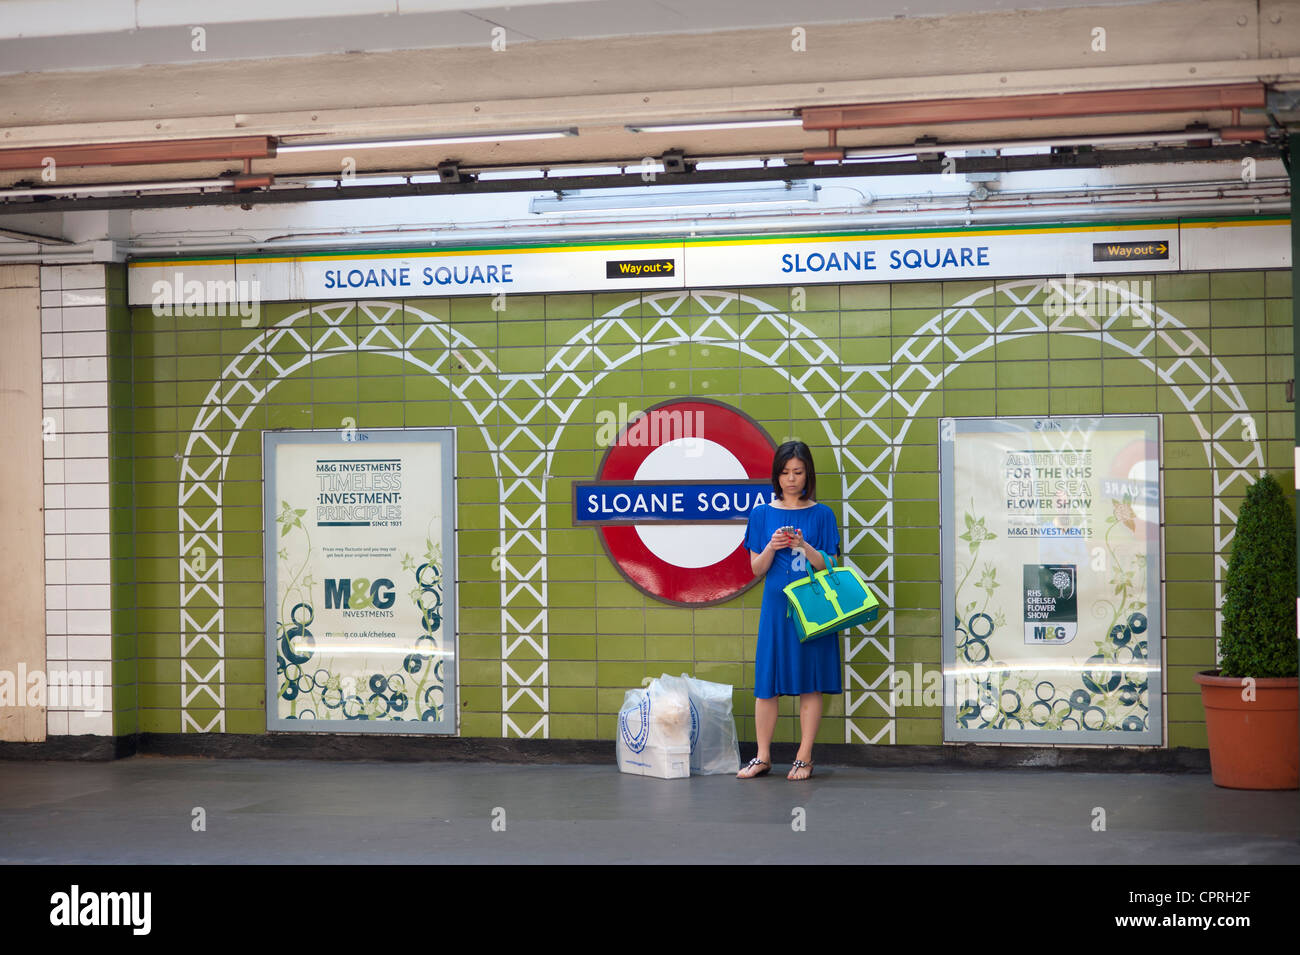 London, England, UK. Sloane Square Underground Station with people waiting for tube train. May 2012. Stock Photo